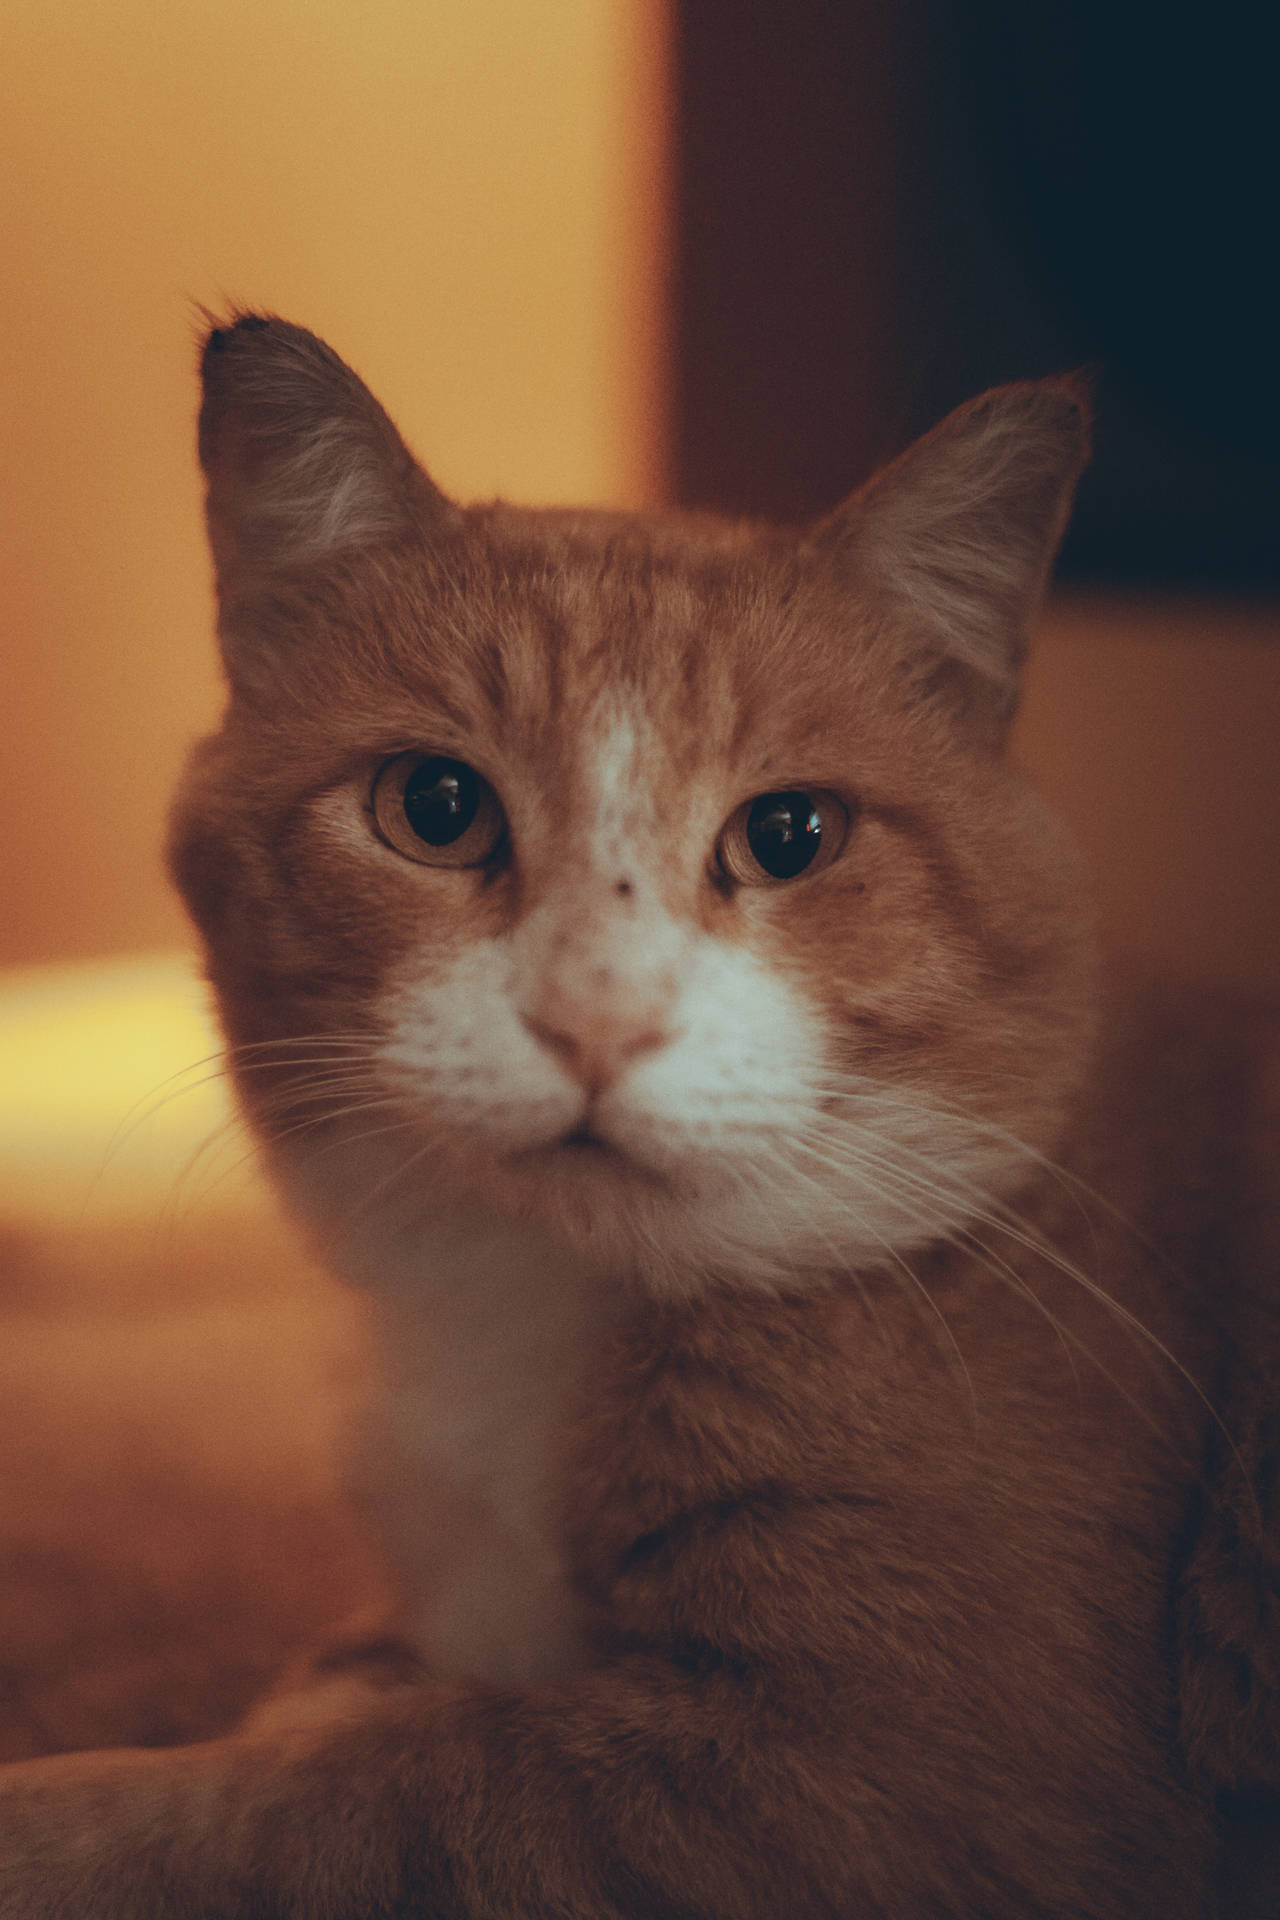 Cute Cat Aesthetic Ginger Tabby Wallpaper